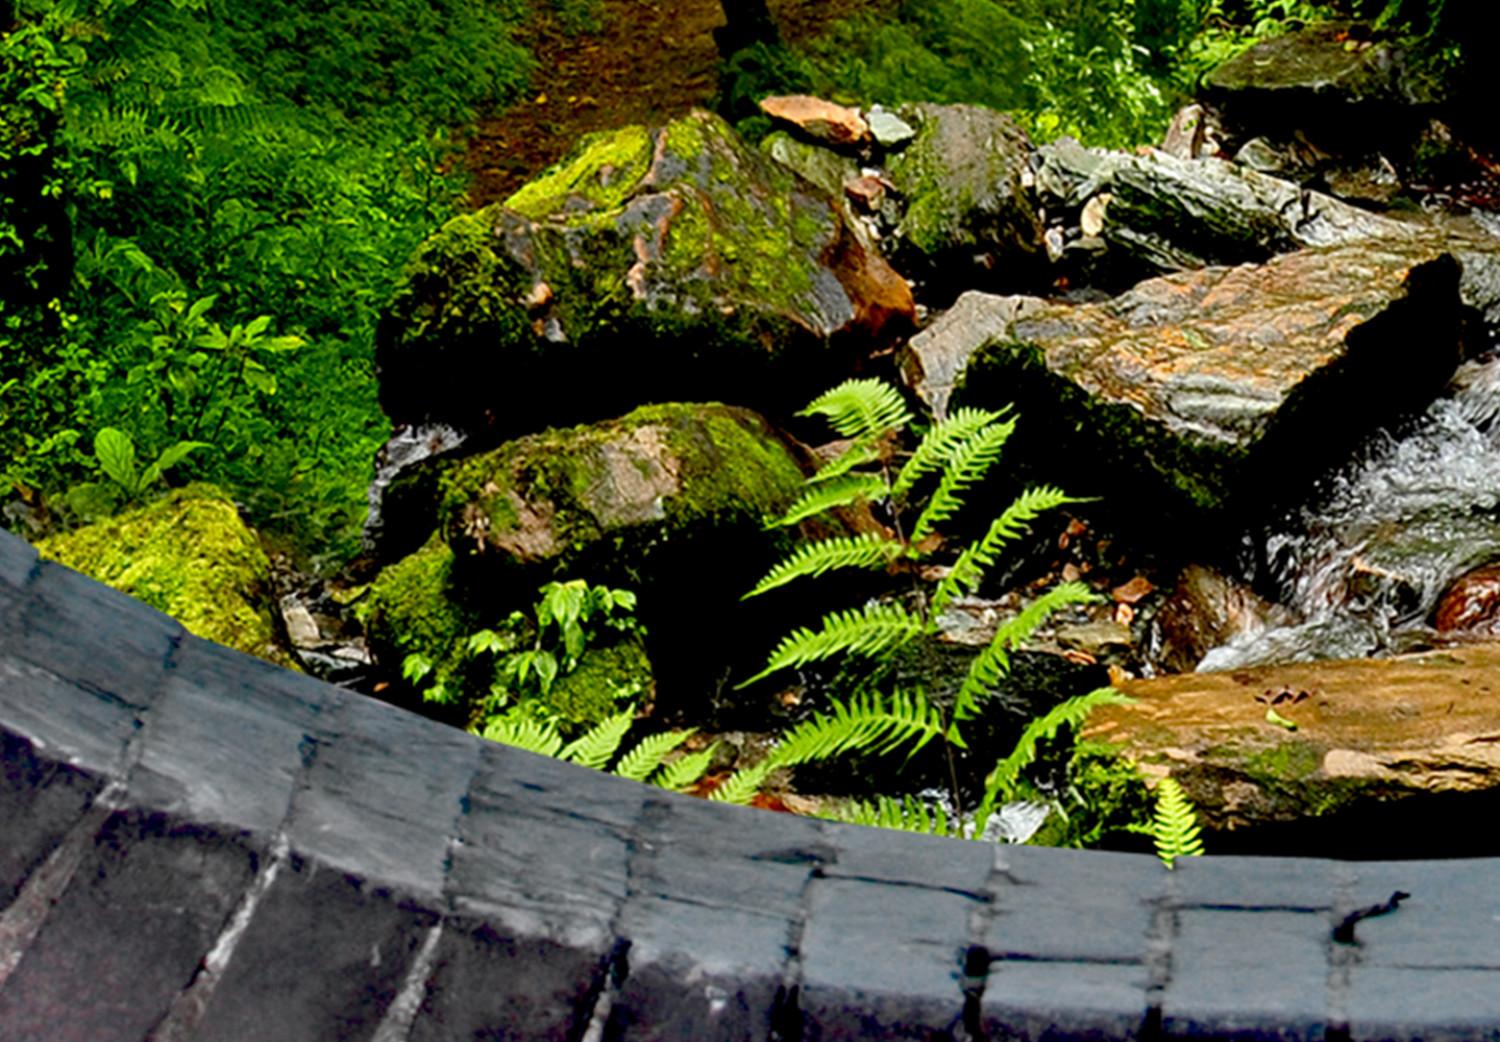 Cuadro decorativo Misterioso paso de piedra (1 parte) - vista del bosque verde